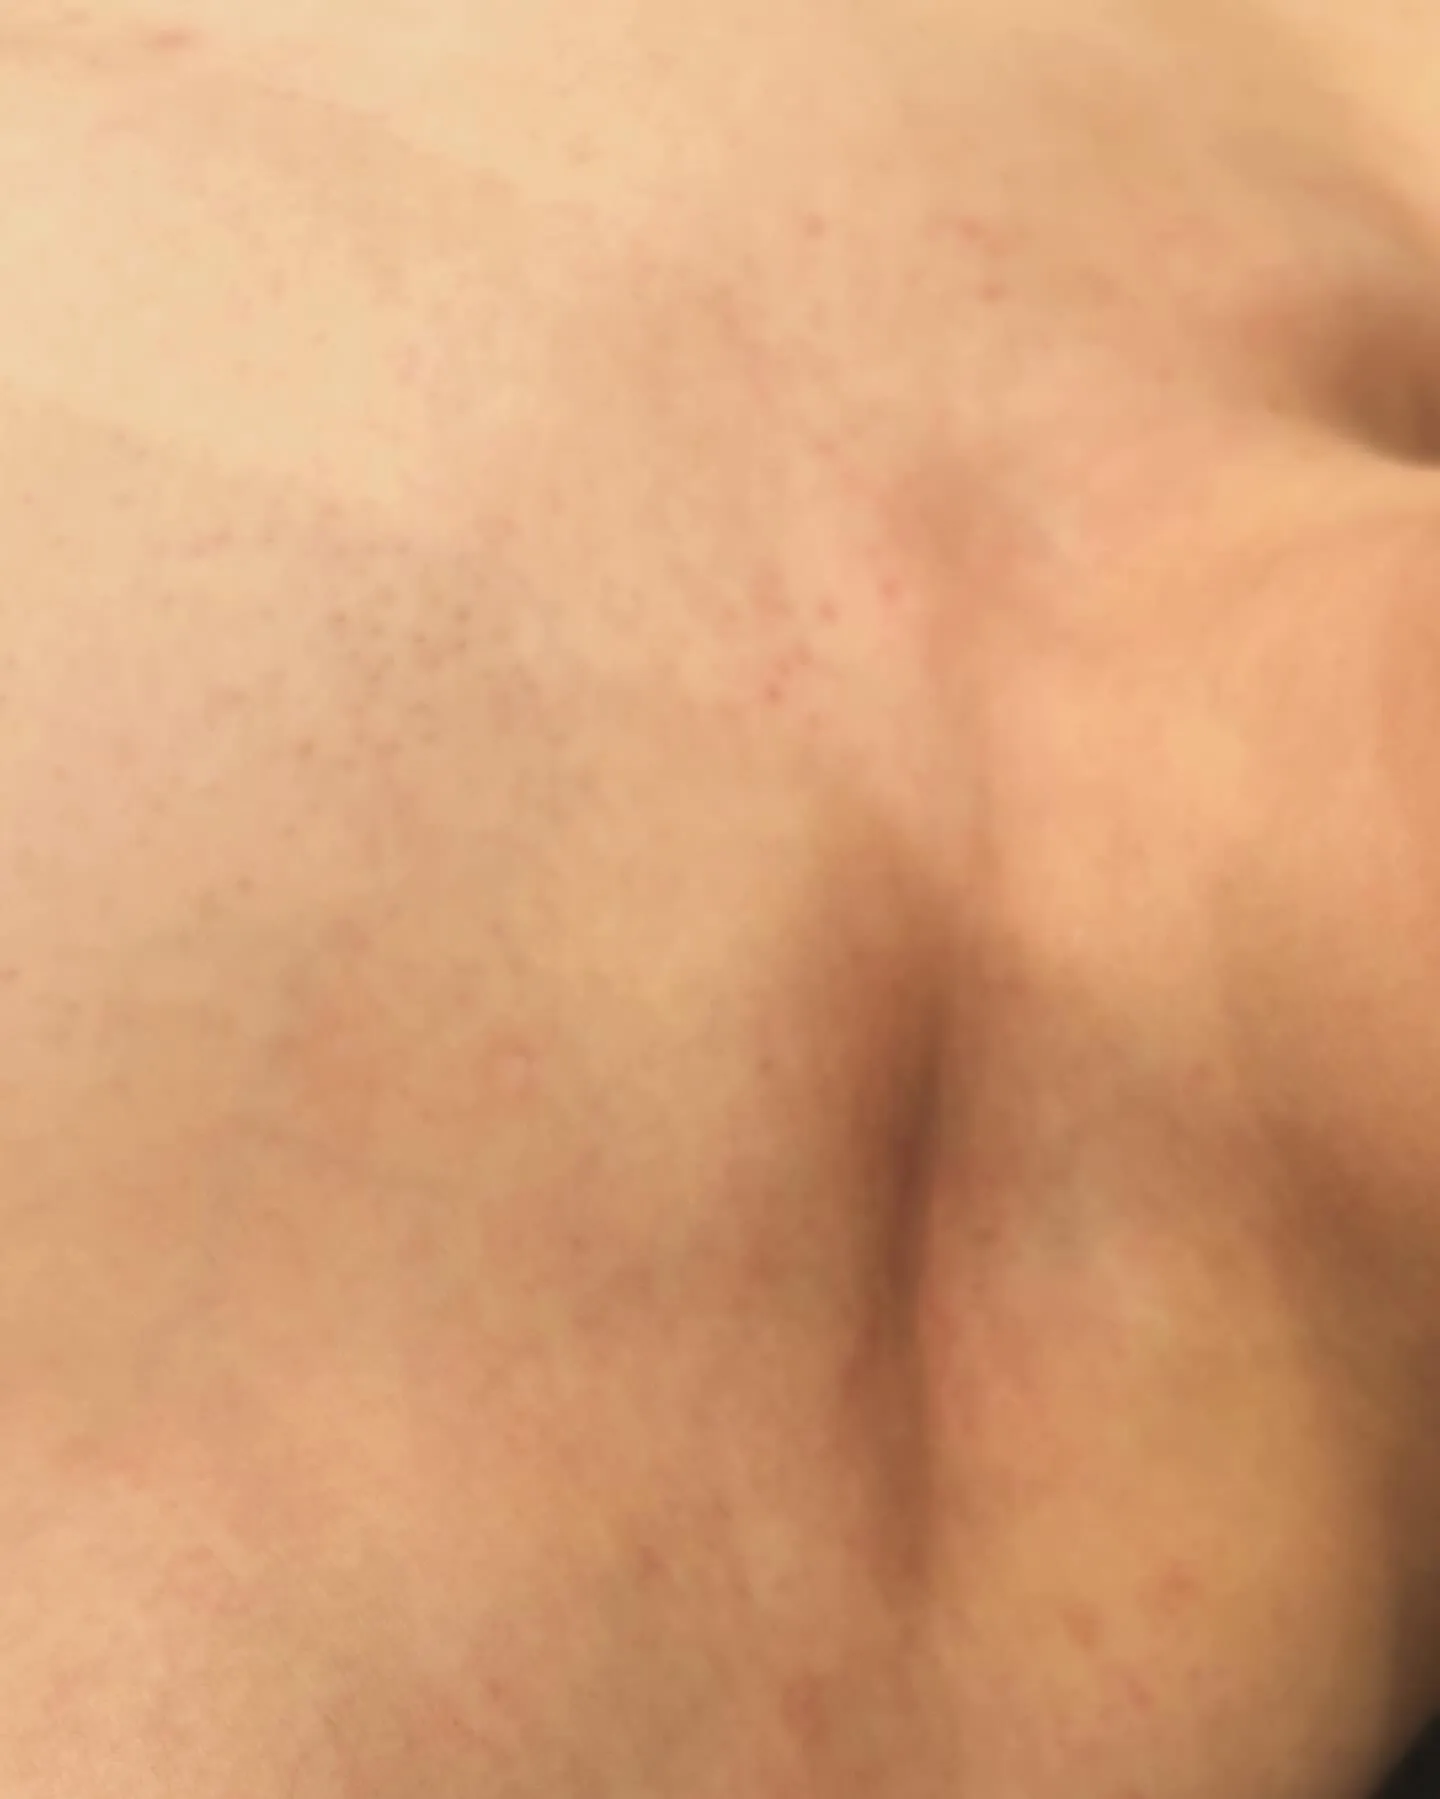 プラズマ照射で劇的にアトピー性皮膚炎が改善したお客さま | ブログ | 三重県津市の脱毛ならRencontre